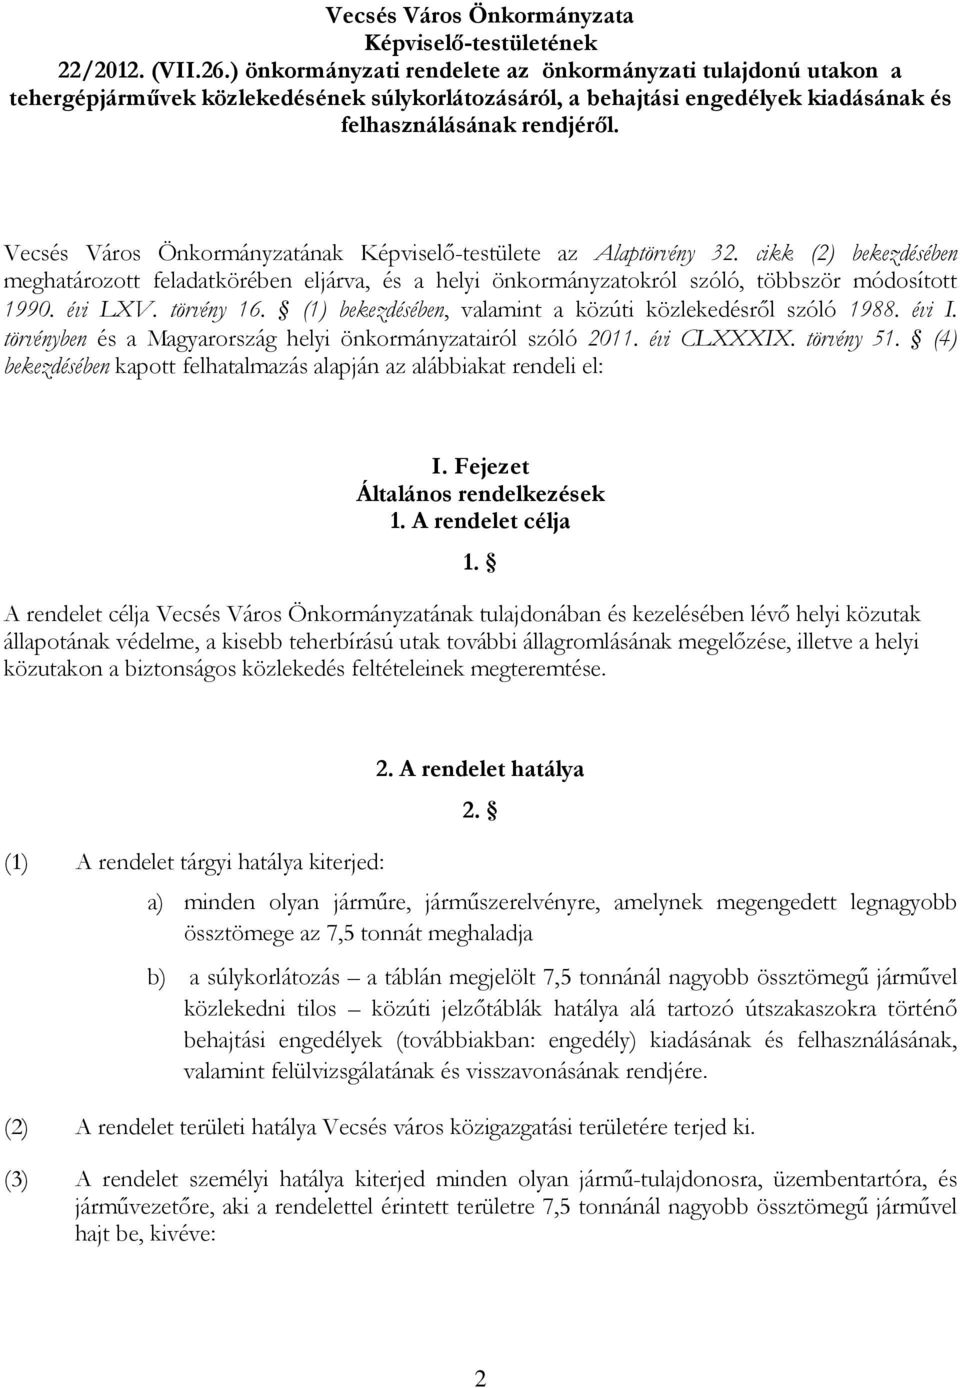 Vecsés Város Önkormányzatának Képviselı-testülete az Alaptörvény 32. cikk (2) bekezdésében meghatározott feladatkörében eljárva, és a helyi önkormányzatokról szóló, többször módosított 1990. évi LXV.